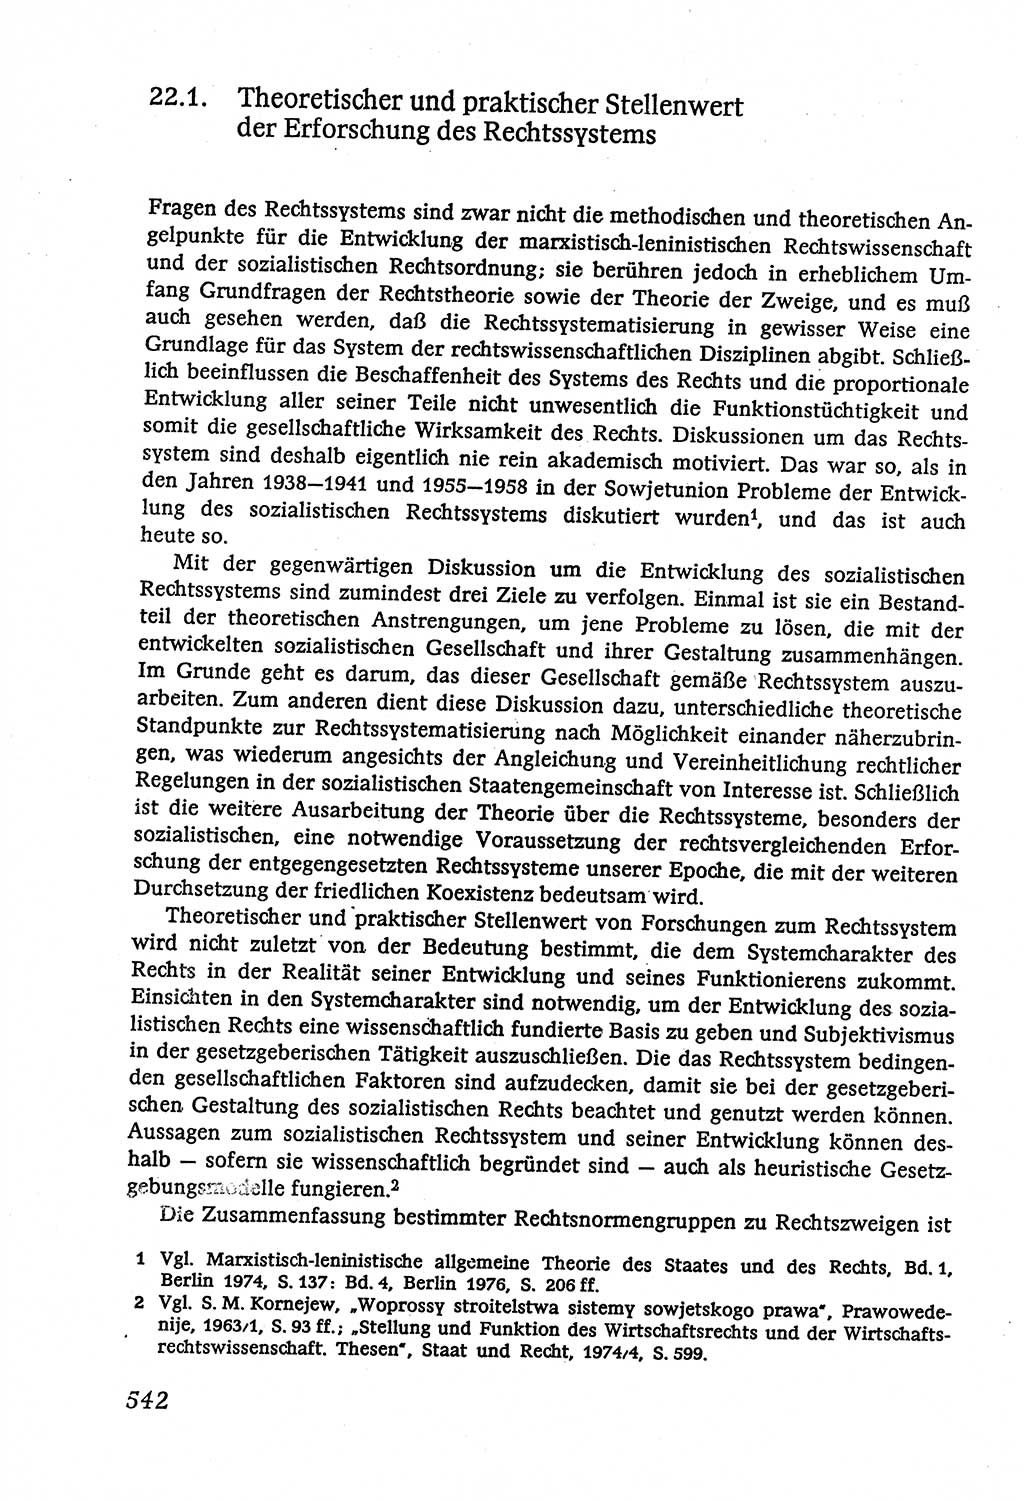 Marxistisch-leninistische (ML) Staats- und Rechtstheorie [Deutsche Demokratische Republik (DDR)], Lehrbuch 1980, Seite 542 (ML St.-R.-Th. DDR Lb. 1980, S. 542)